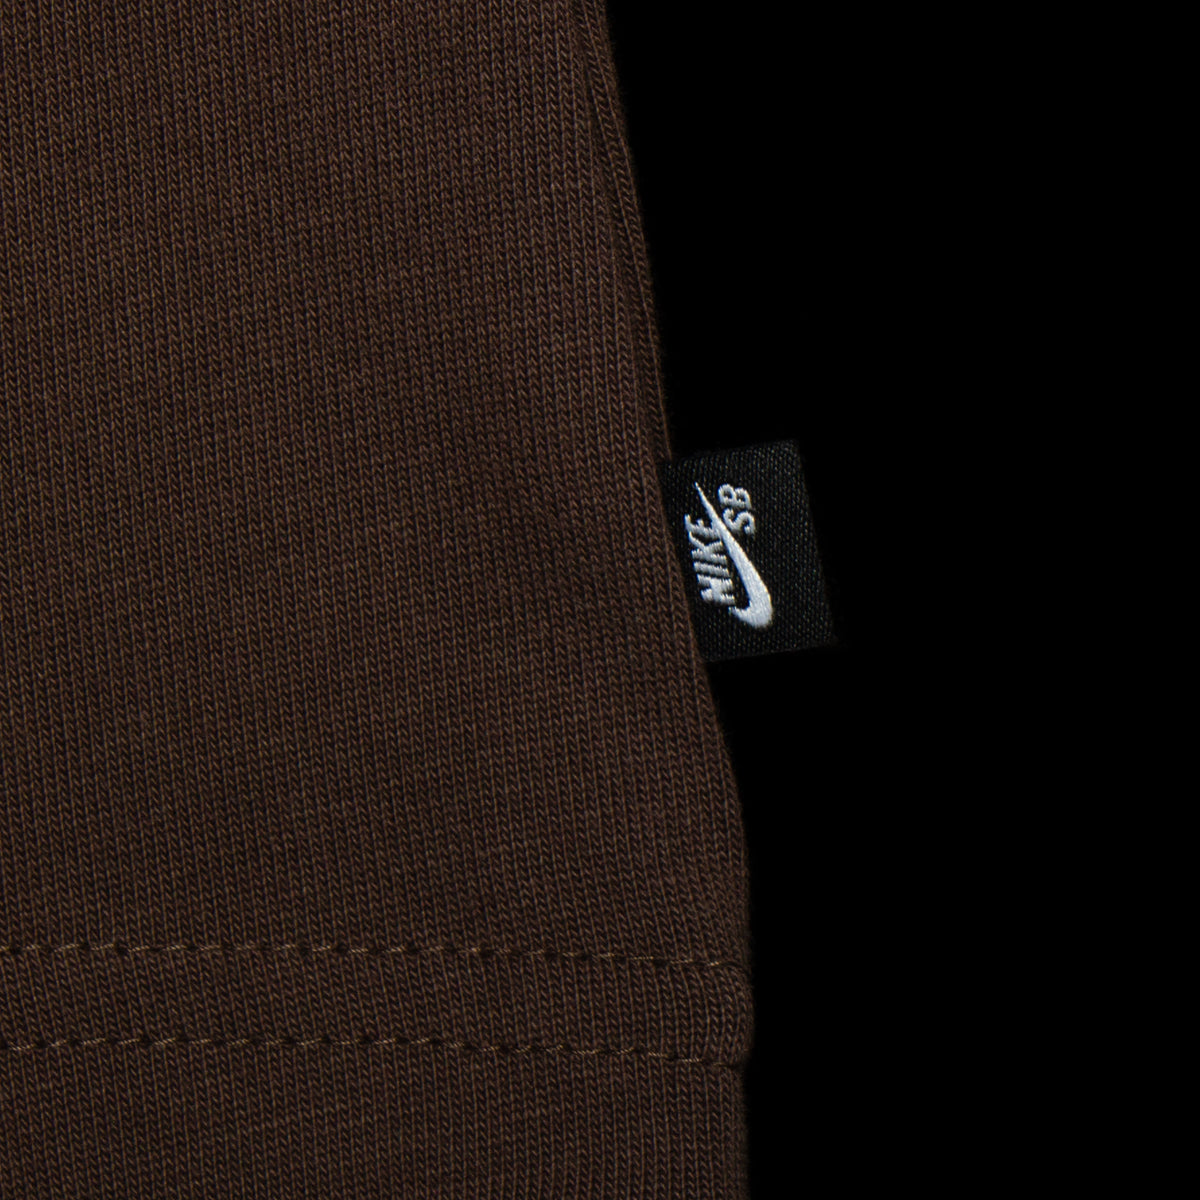 Nike SB | M90 Yuto T-Shirt Style # FN0669-237 Color : Baroque Brow